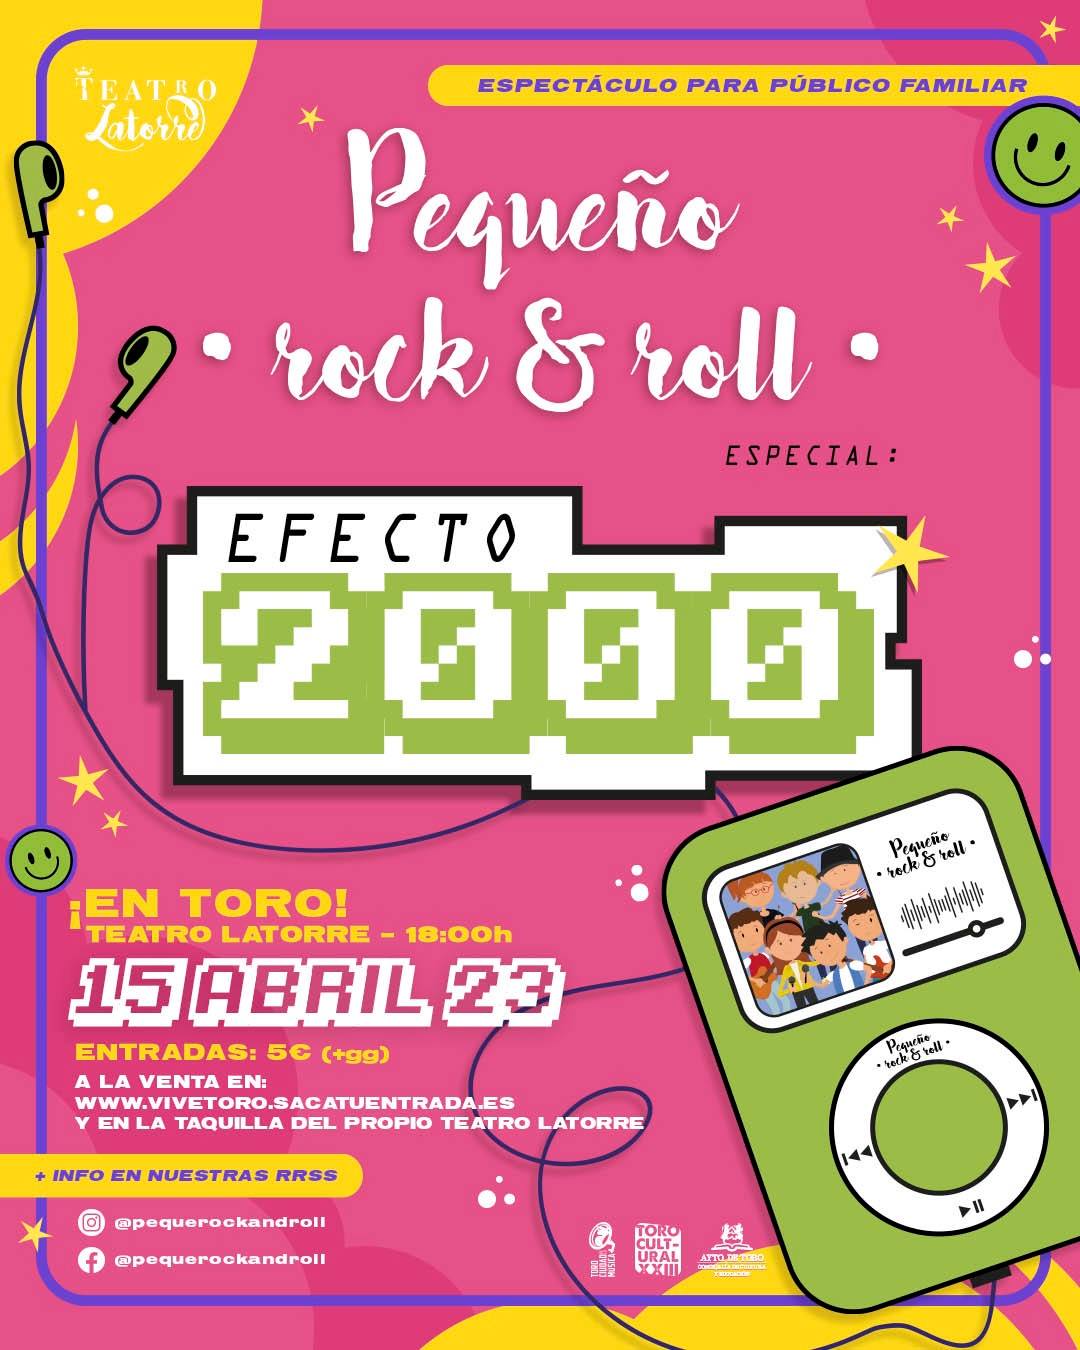 Pequeño Rock & Roll: EFECTO 2000